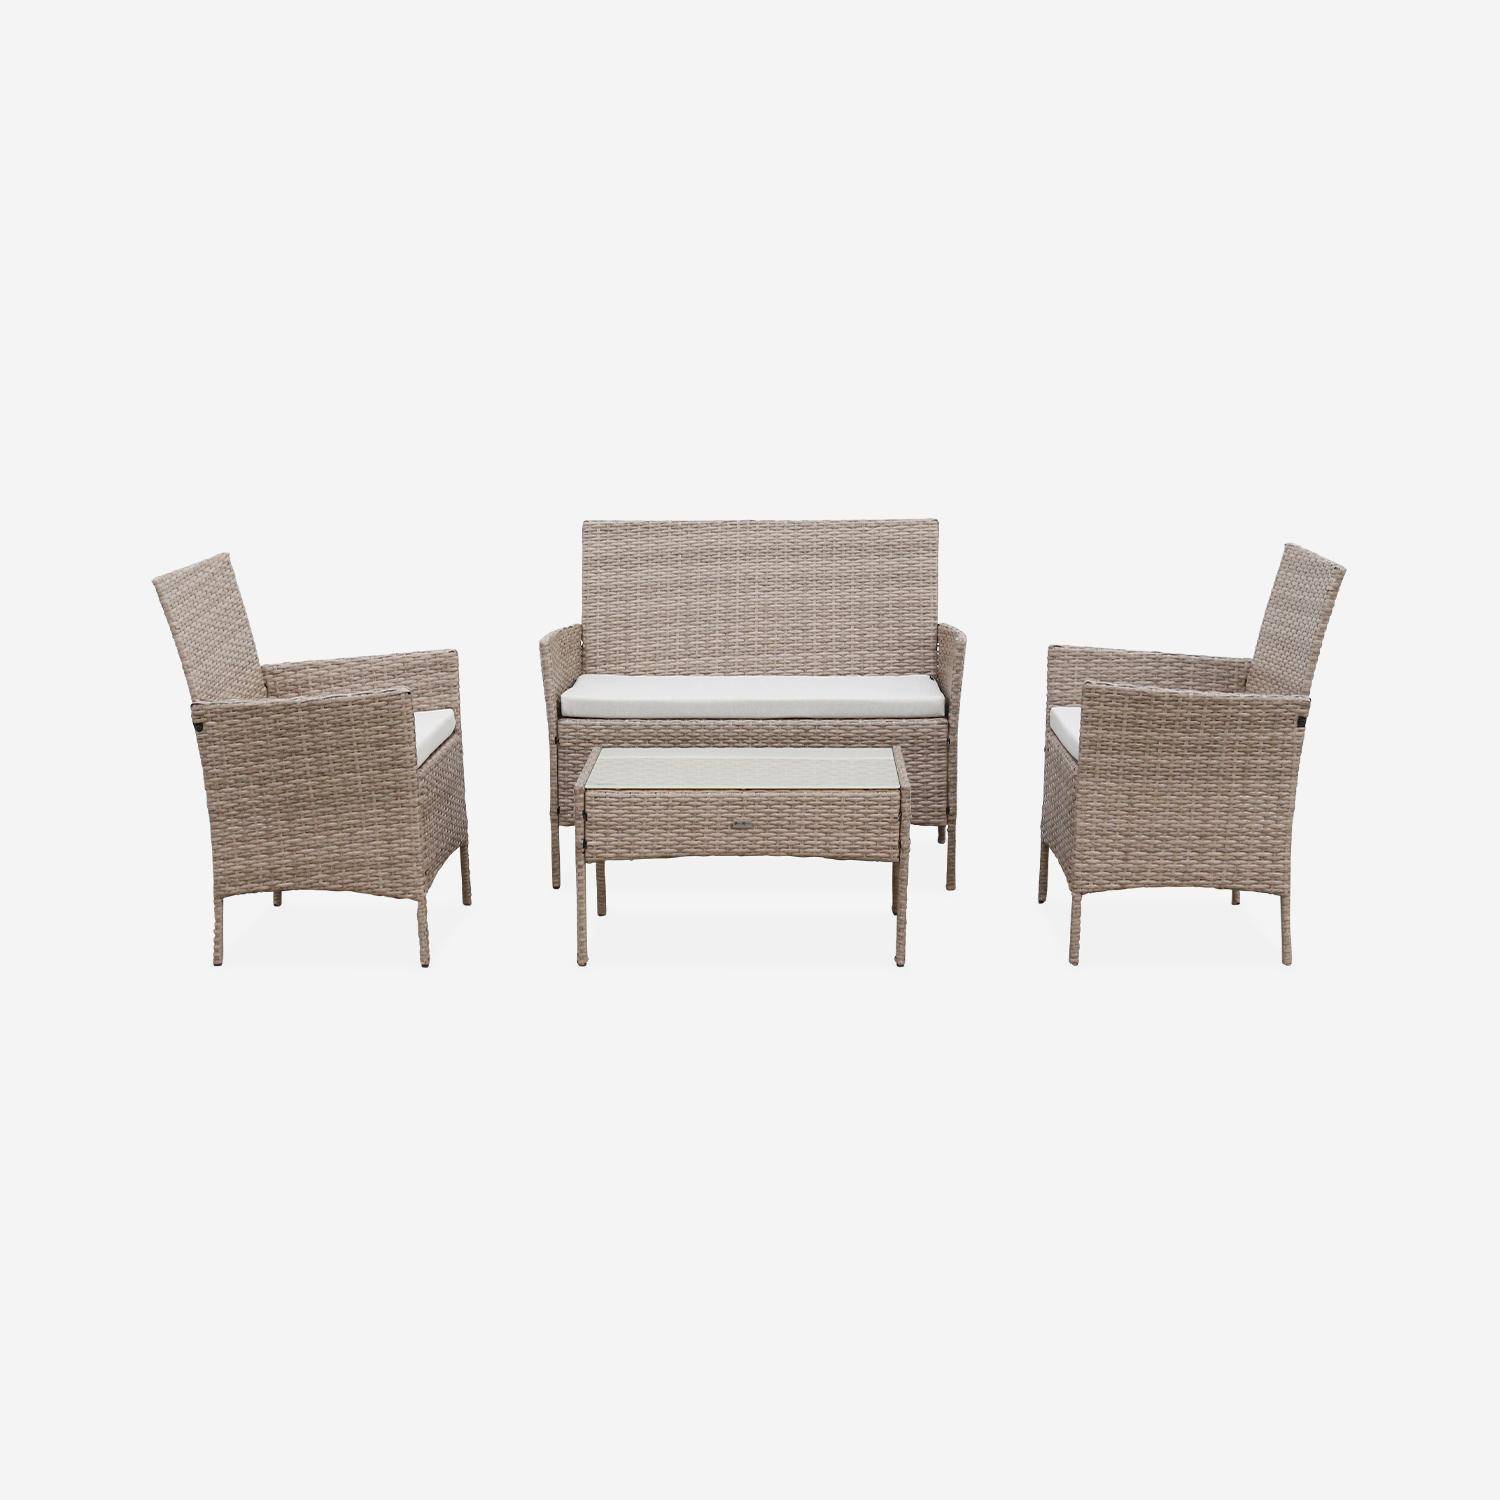 Tuinset Moltès - 4 plaatsen - wicker - 2 fauteuils, 1 sofa en een salontafel, naturel/beige Photo4